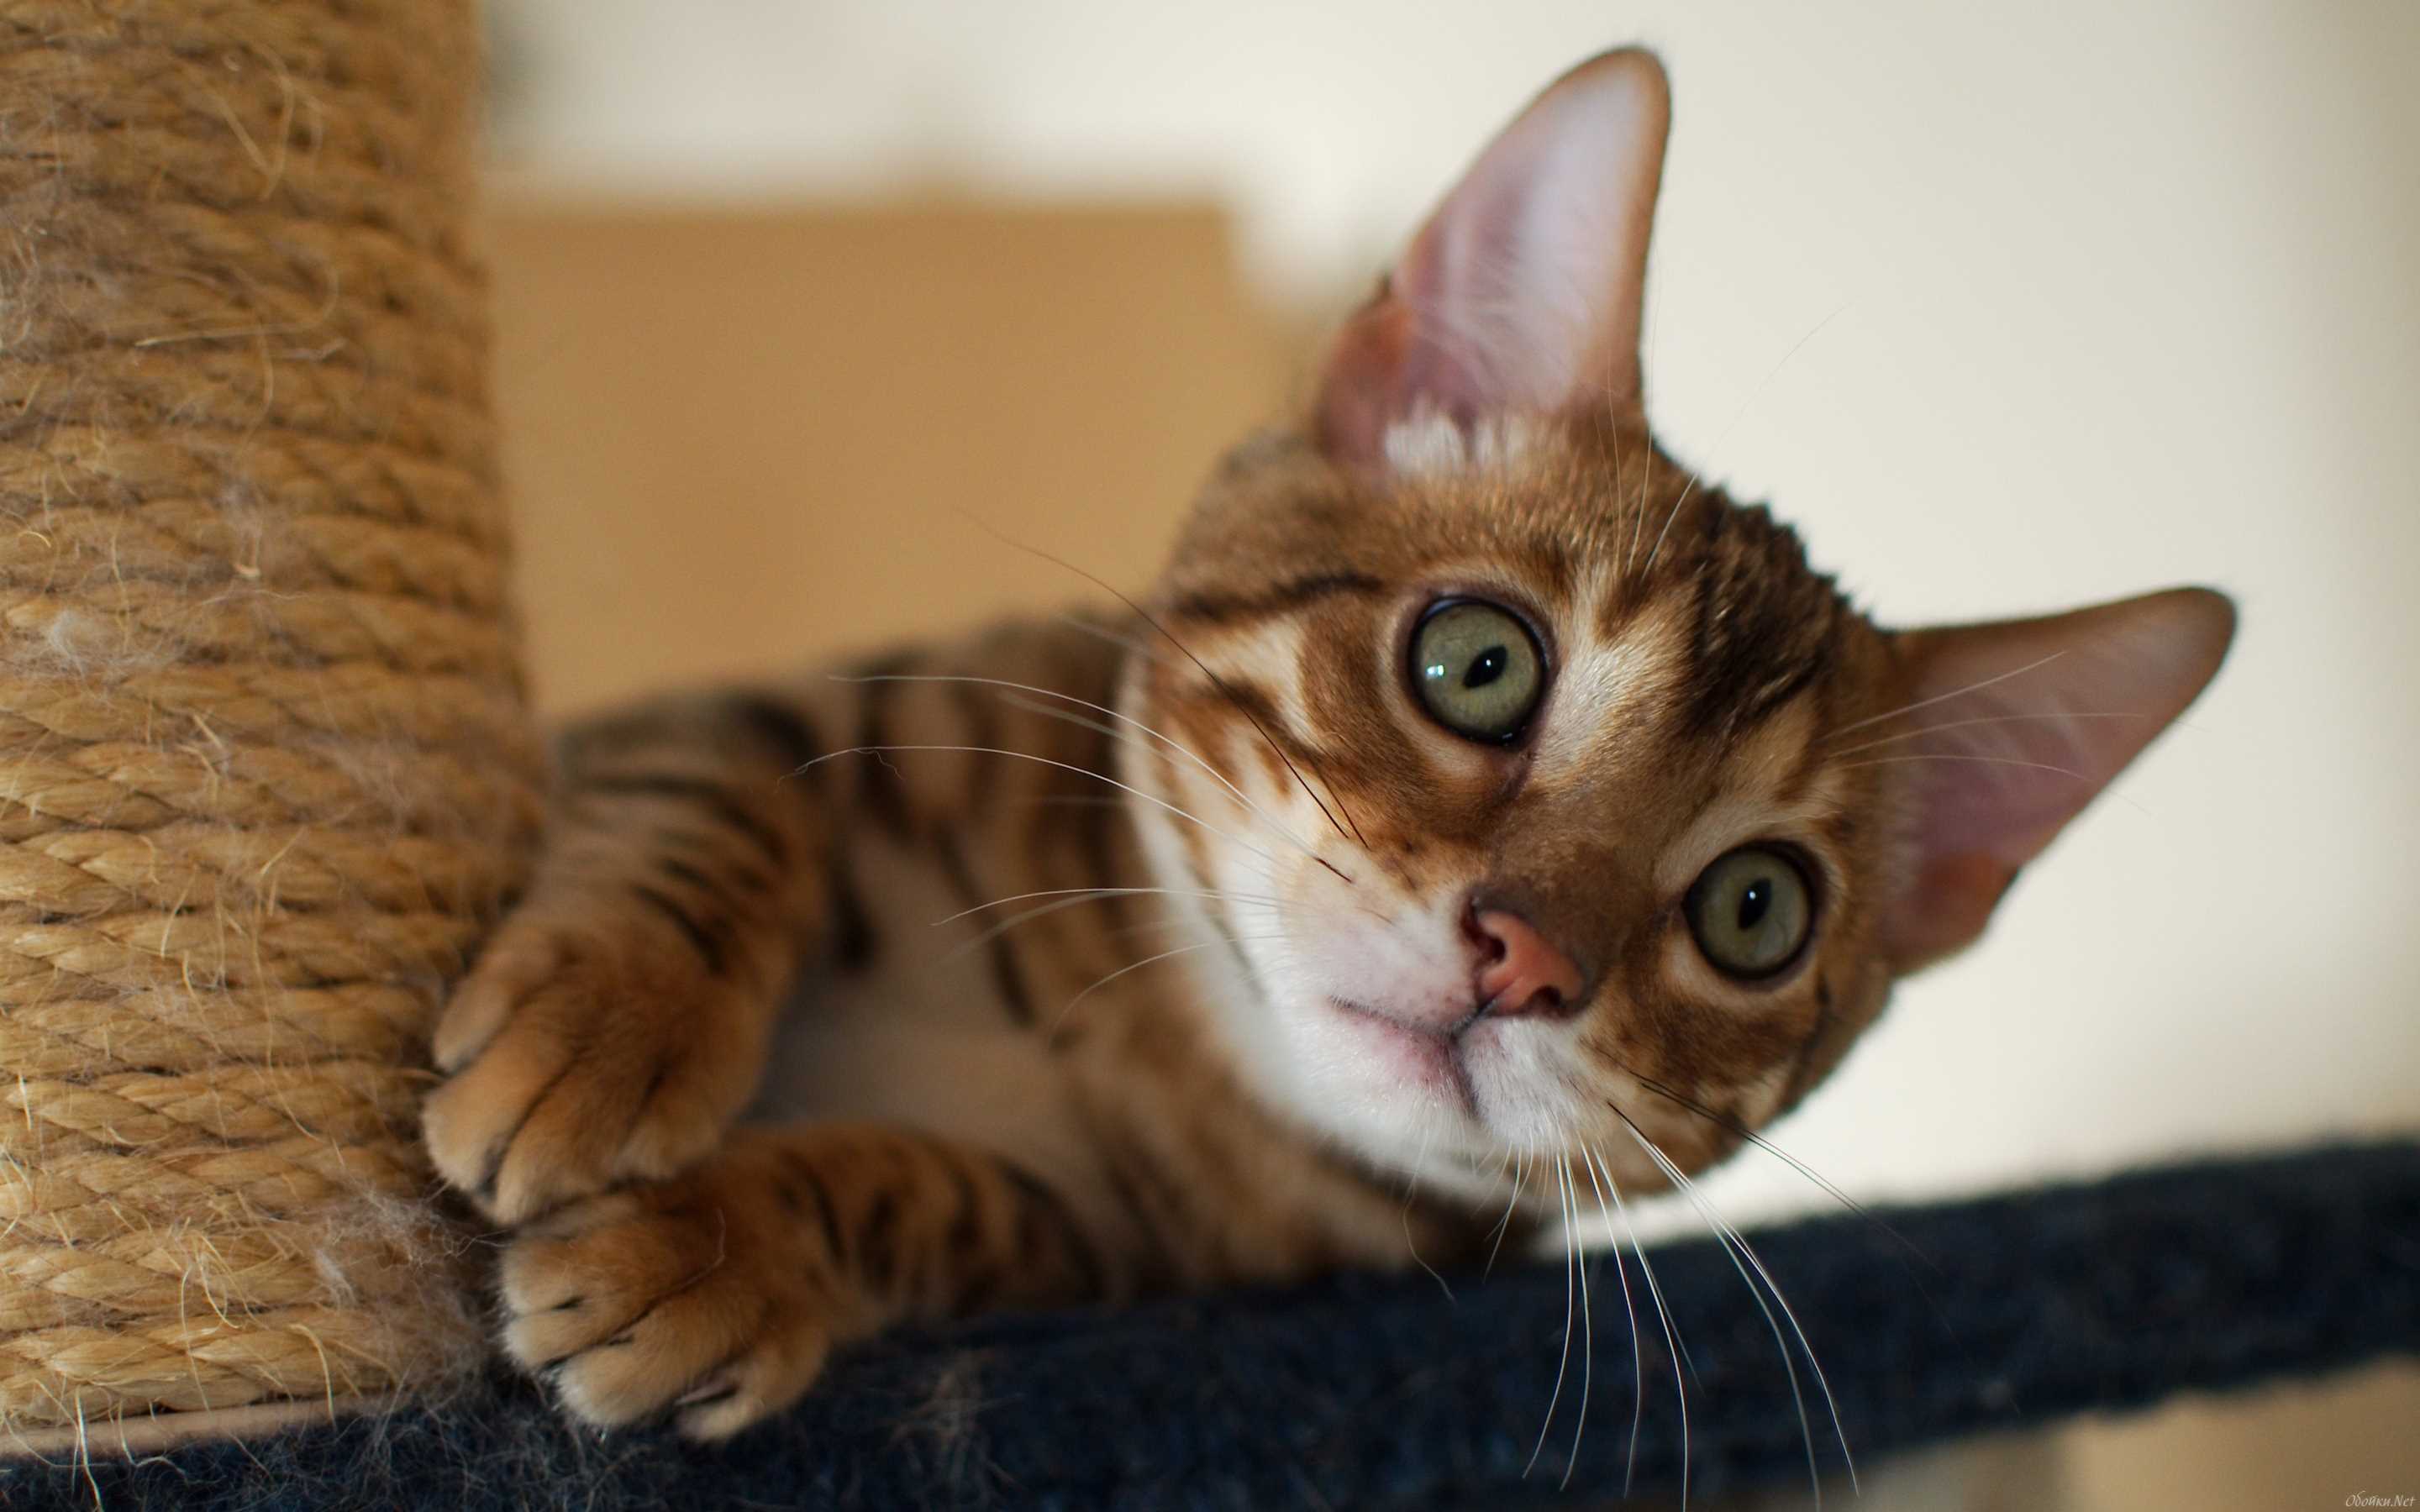 Как отучить кошку или котенка драть диван и царапать обои: советы экспертов